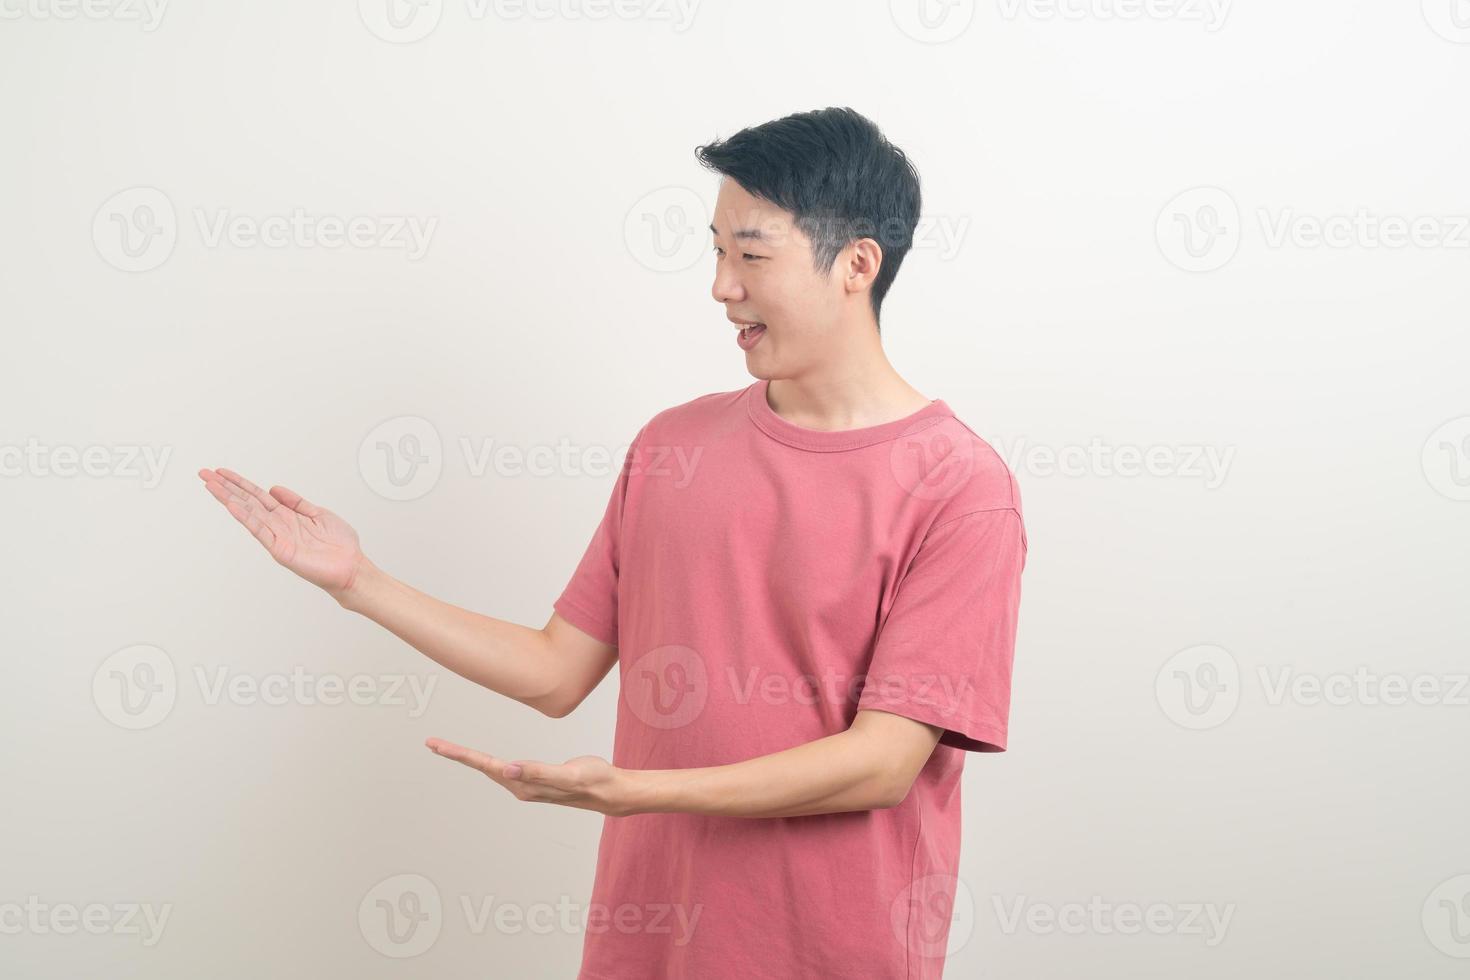 Hombre asiático con la mano apuntando o presentando sobre fondo blanco. foto